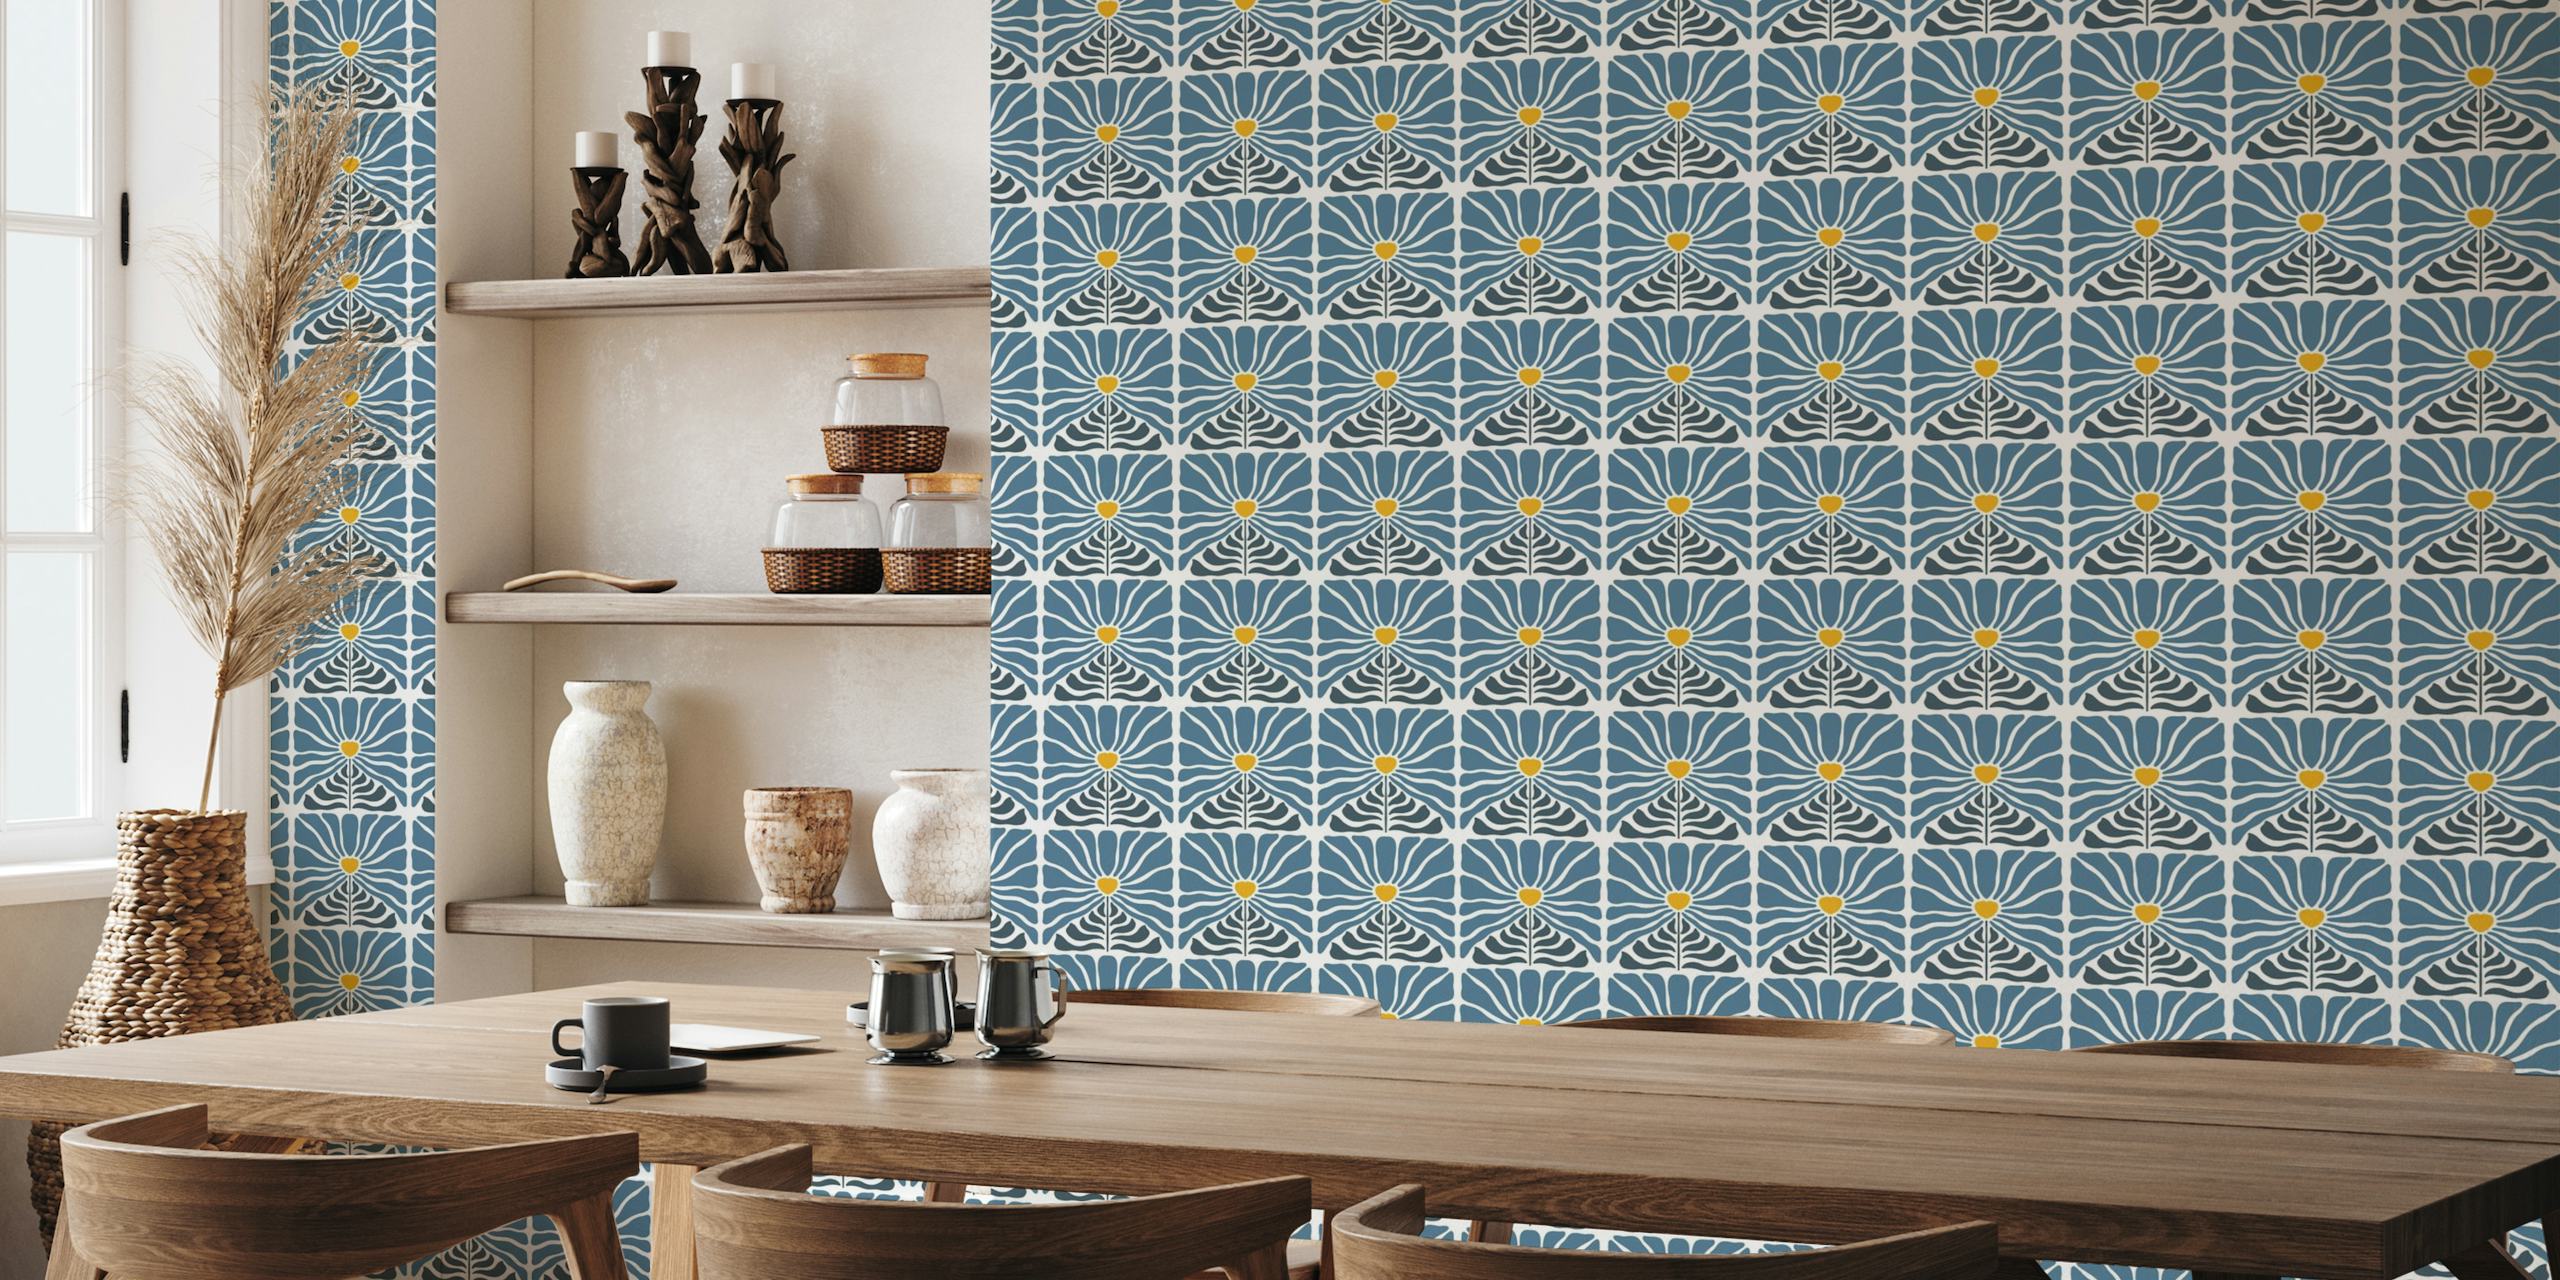 Zidna slika inspirirana starinom s plavim cvijećem sa žutim središtem na pozadini s retro uzorkom